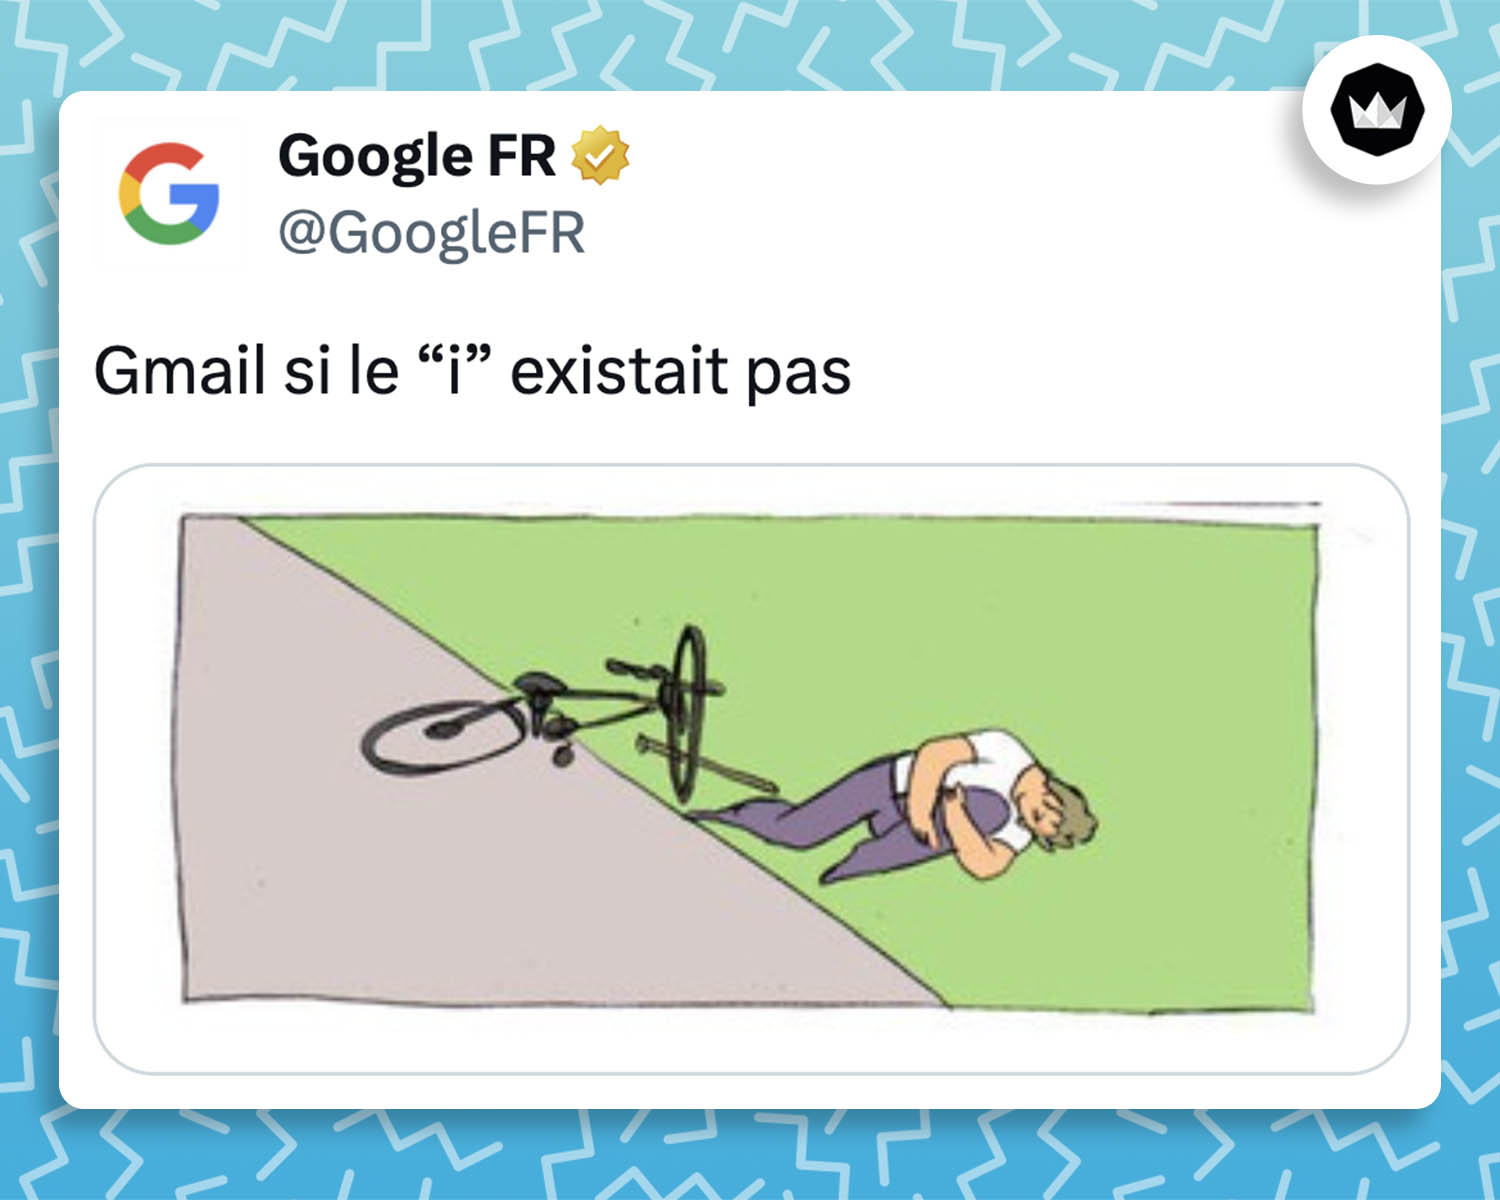 Googlefr : Gmail si le "i" existait pas. 
Accompagné de la 3e partie du même de l'homme qui se met lui-même un bâton dans la roue de son vélo et qui tombe. L'homme est par terre et se tient la jambe.